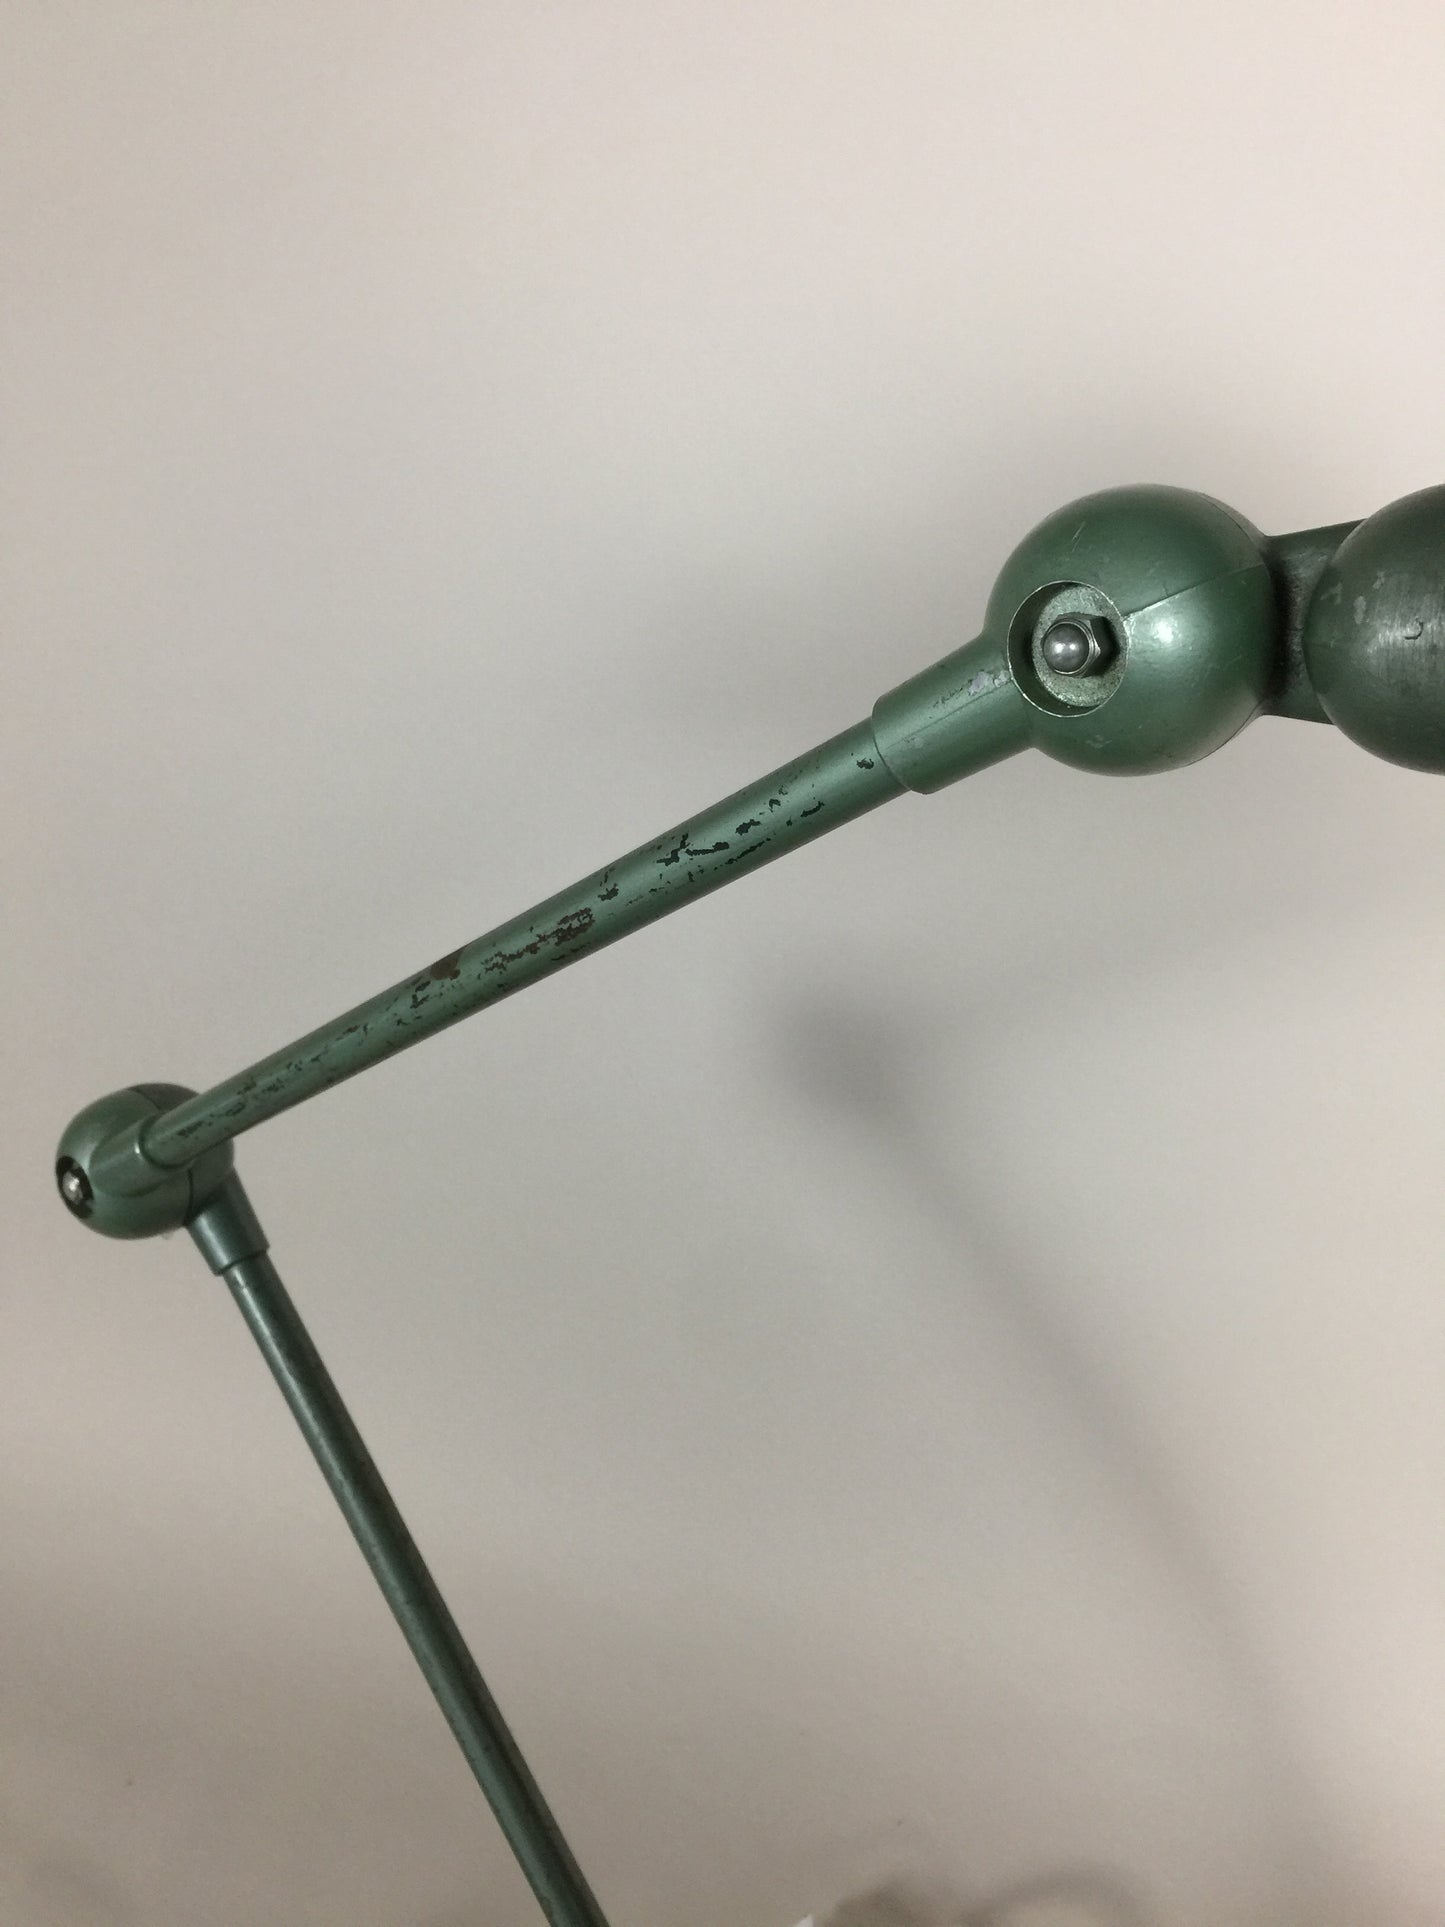 Jieldé Tischlampe in einer köstlichen grünen Farbe und mit Ein-/Ausschalter